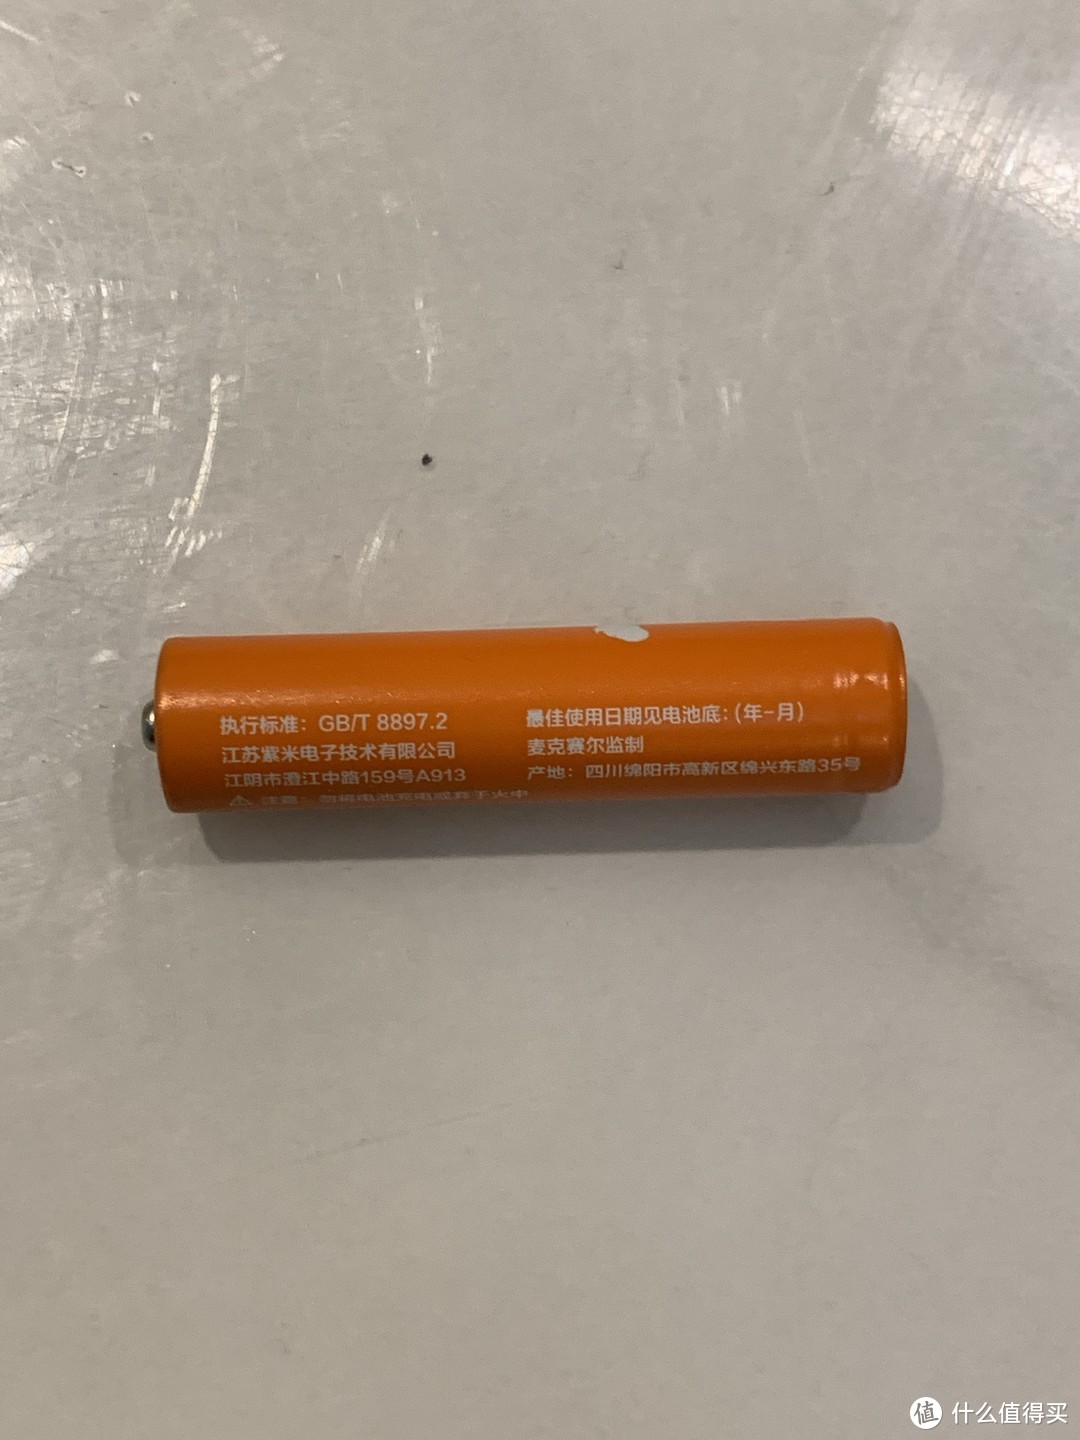 小米彩虹电池使用的还挺好，为什么大家都说它漏液？